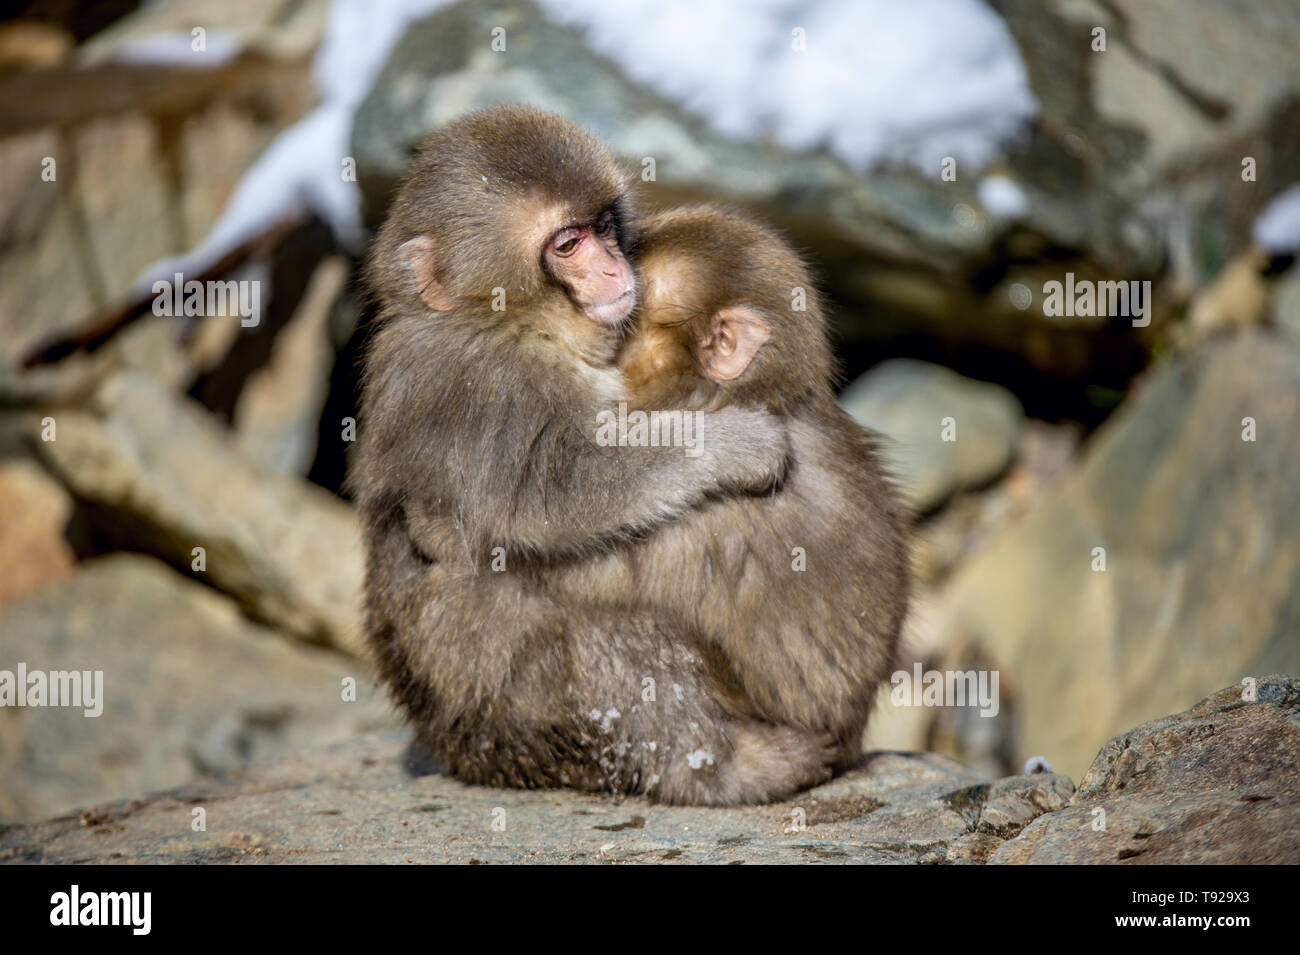 Petits de macaque japonais hugging. Saison d'hiver. Le macaque japonais, nom scientifique : Macaca fuscata, également connu sous le nom de snow monkey. Habita naturel Banque D'Images